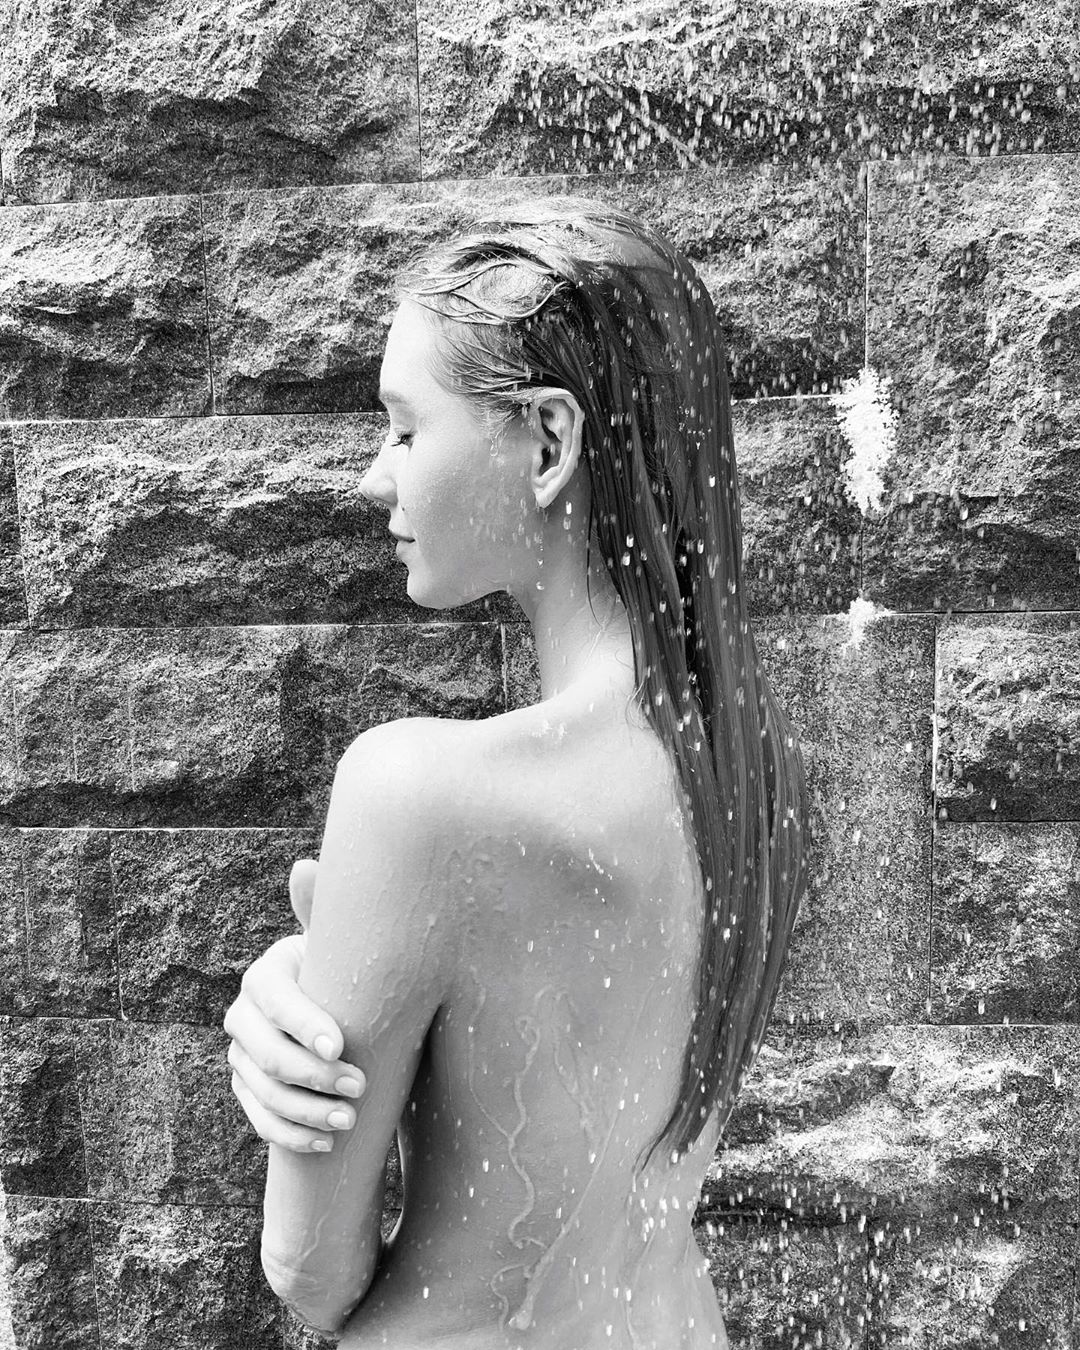 Влажная девочка голышом в душе